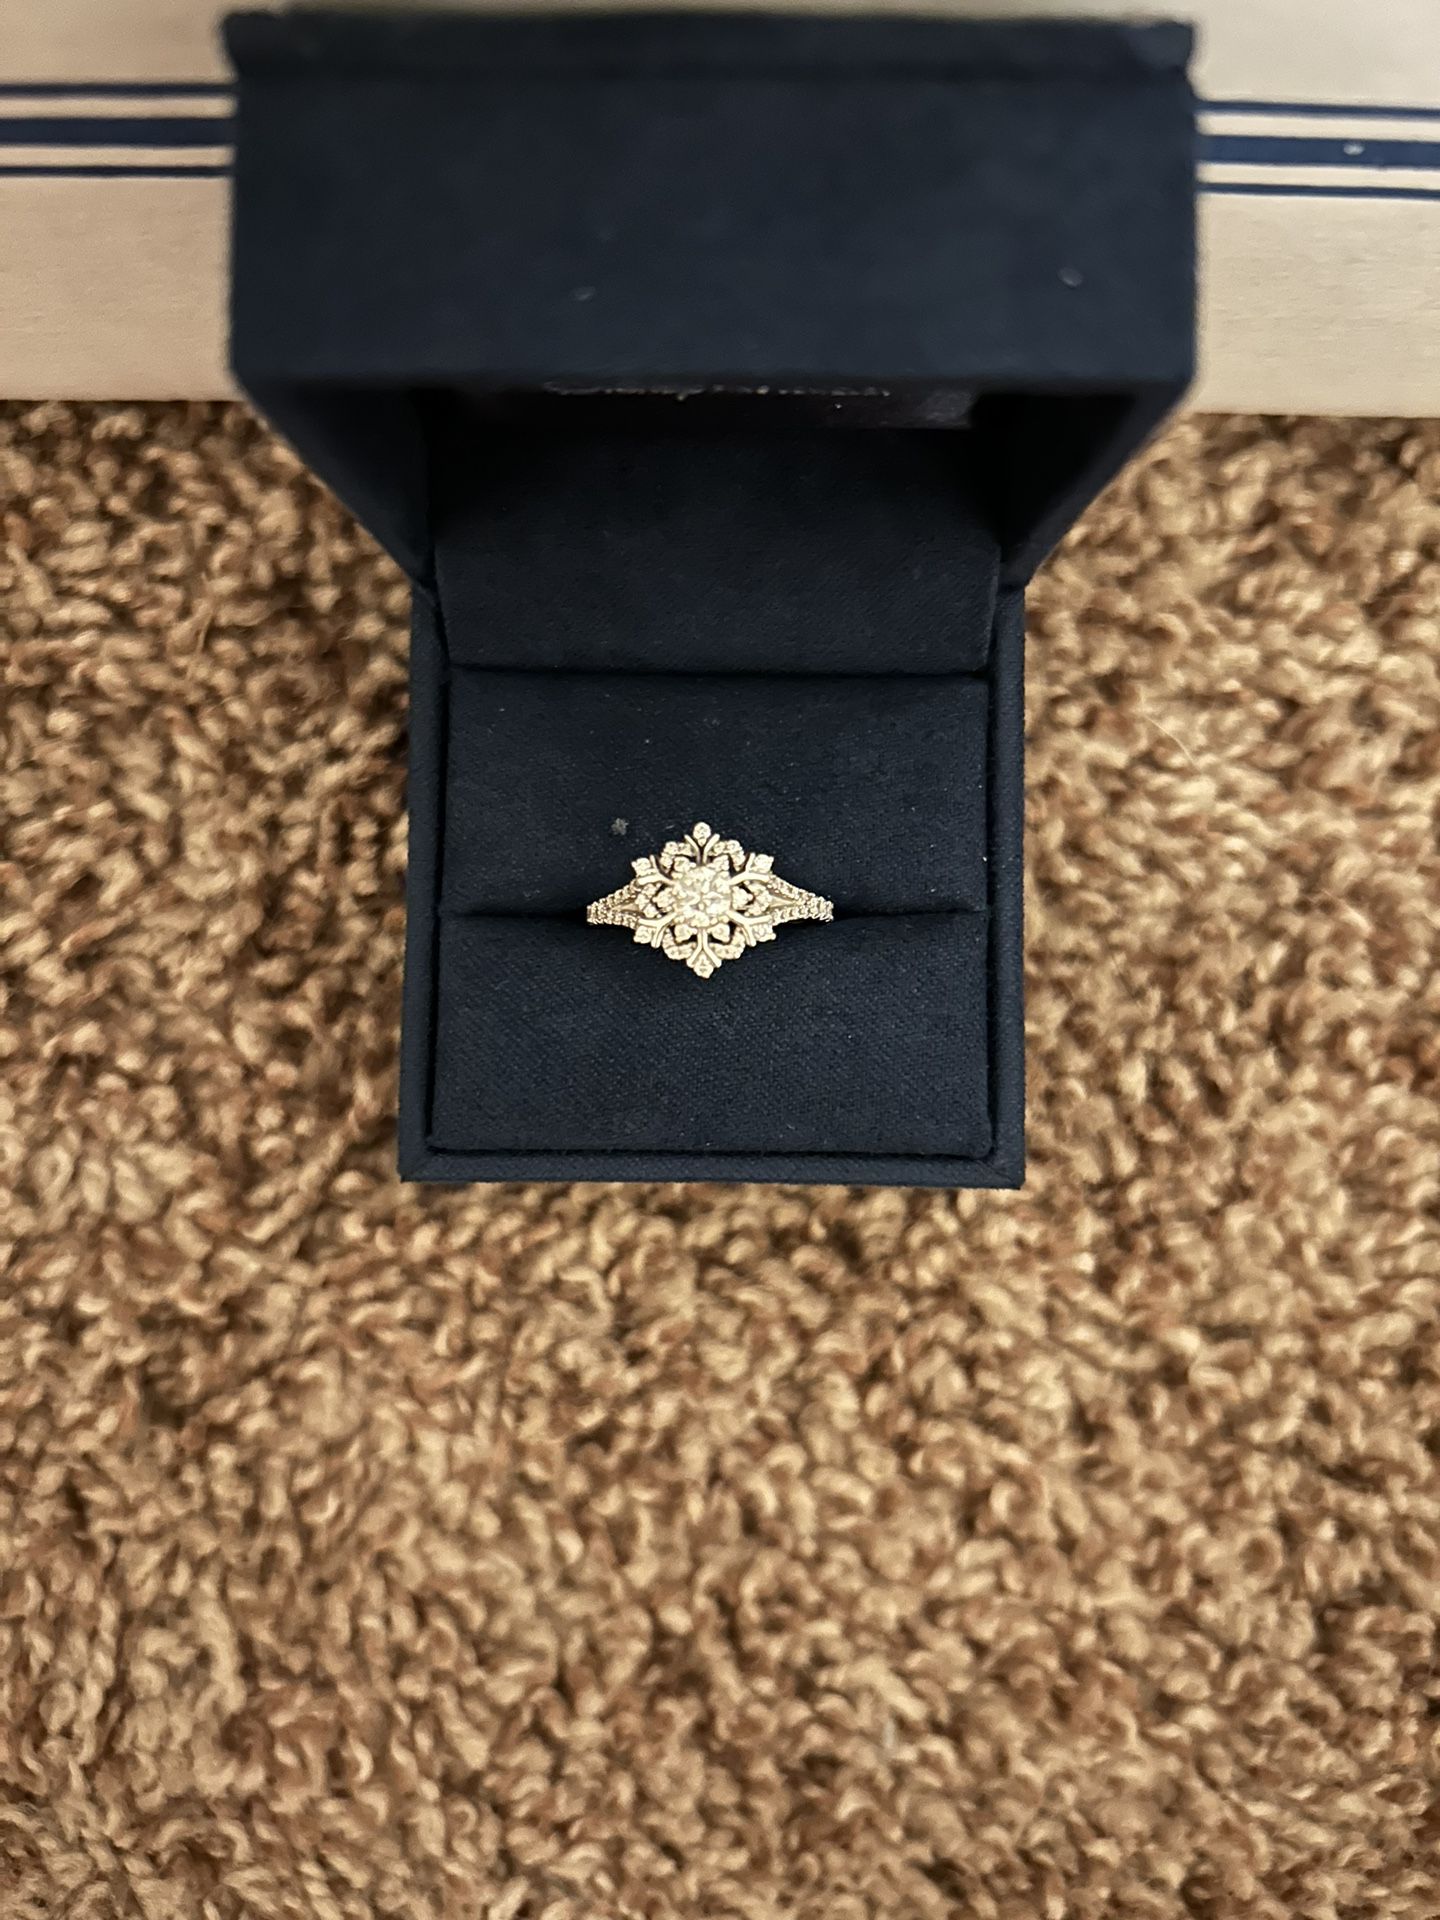 Disney Enchanted Elsa Snowflake White Gold Diamond Ring Size 5.25